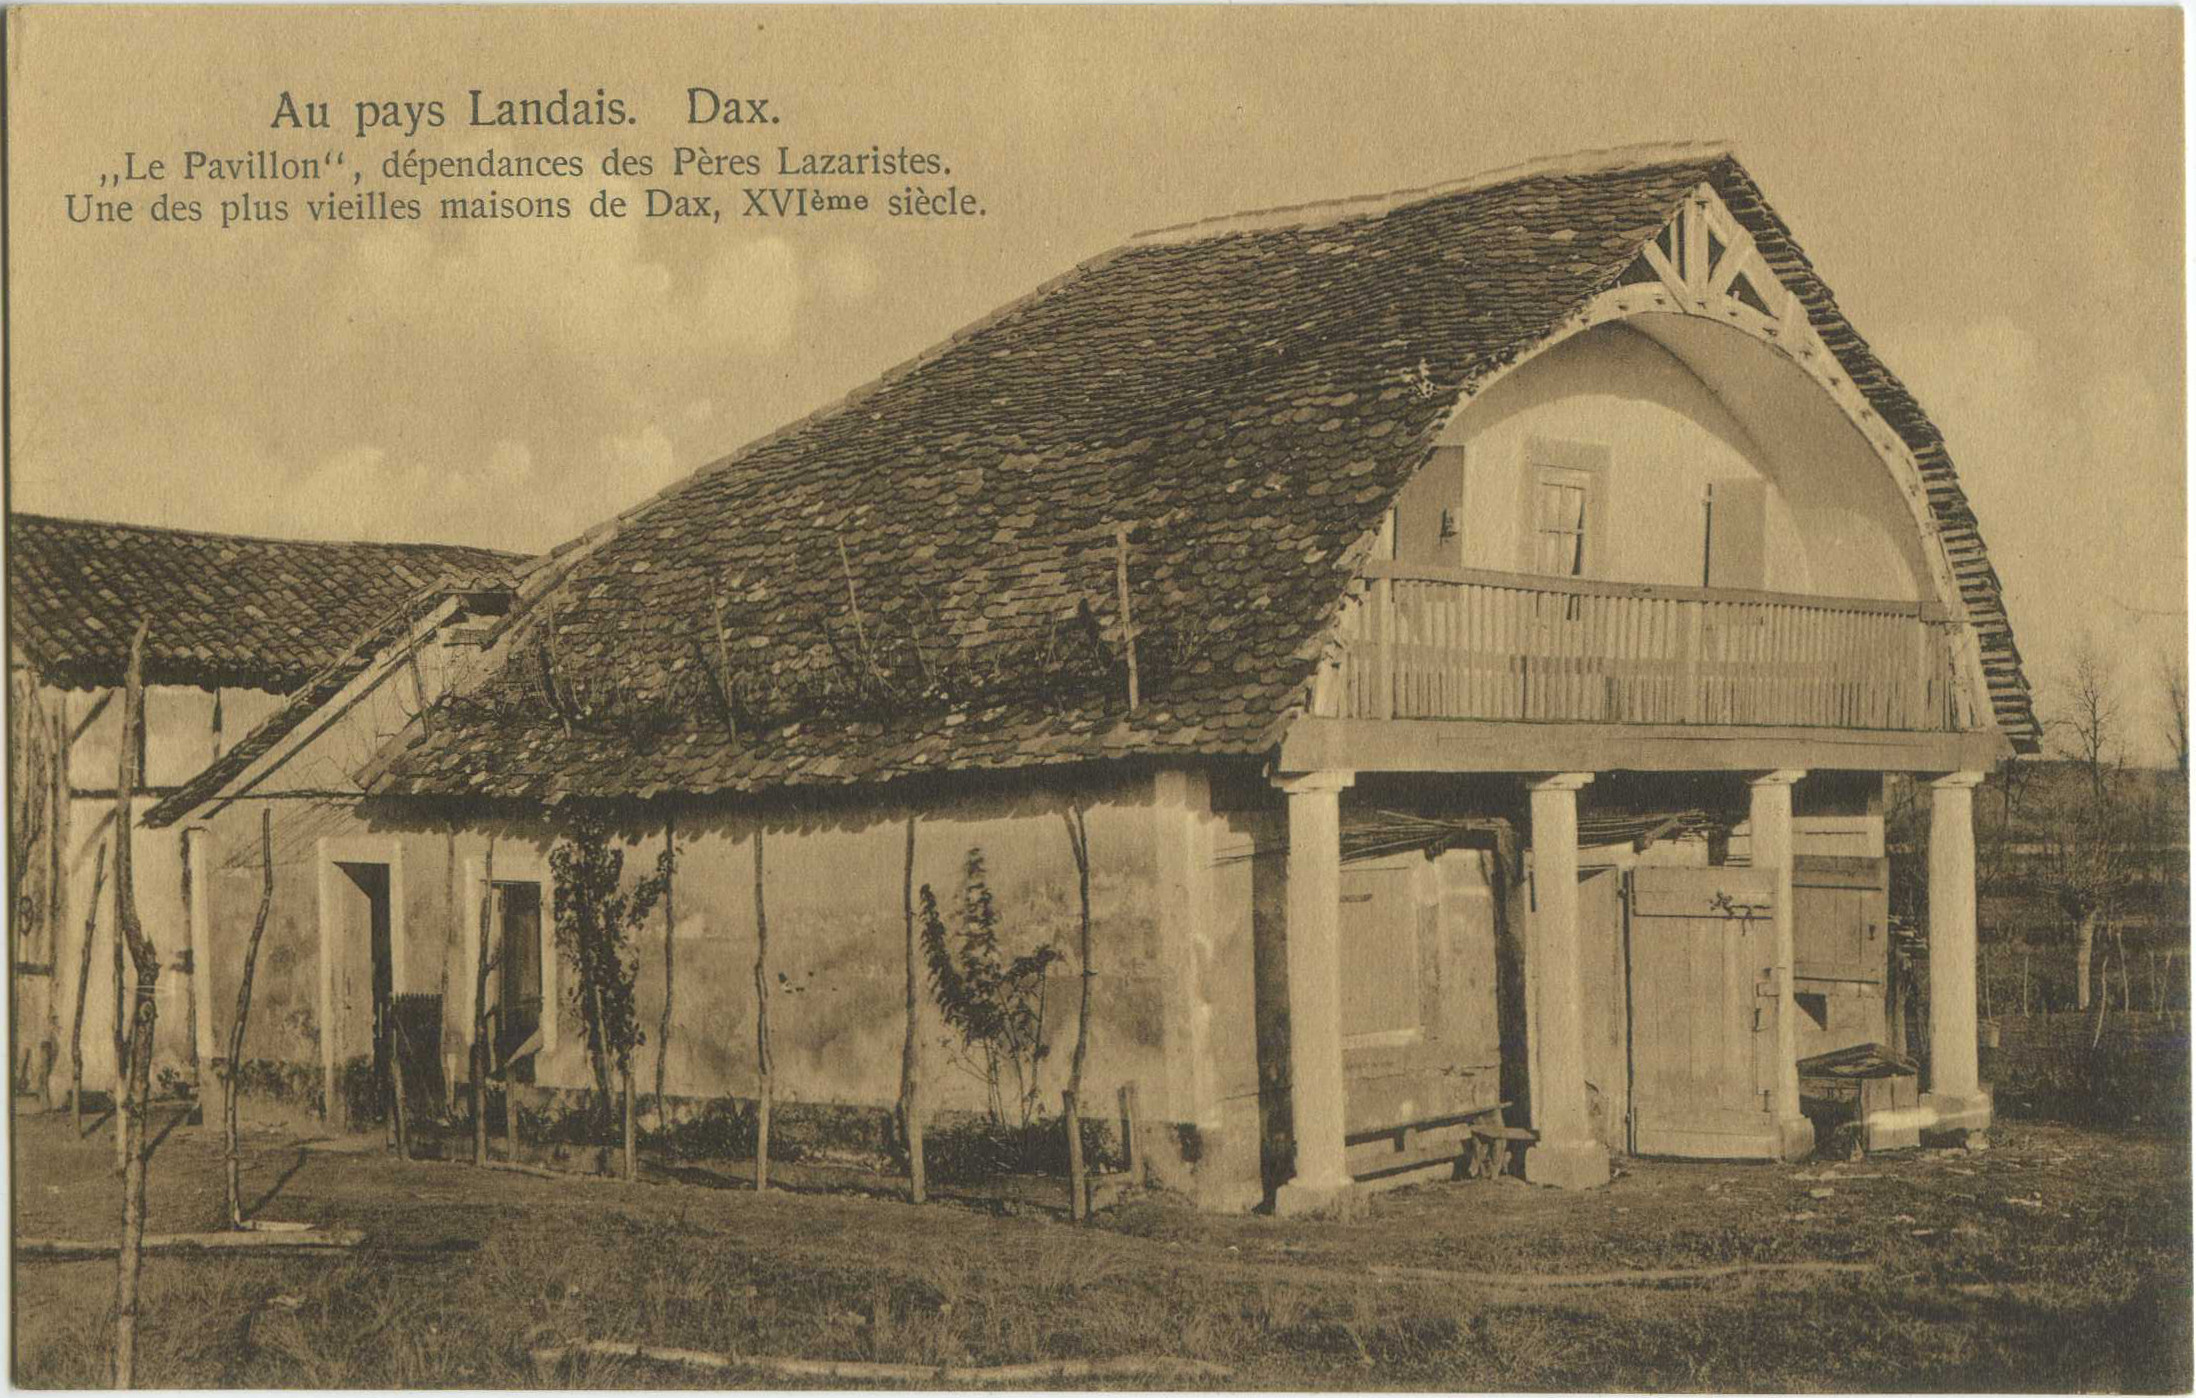 Dax - "Le Pavillon", dépendances des Pères Lazaristes. Une des plus vieilles maisons de Dax, XVI<sup>ème</sup> siècle.